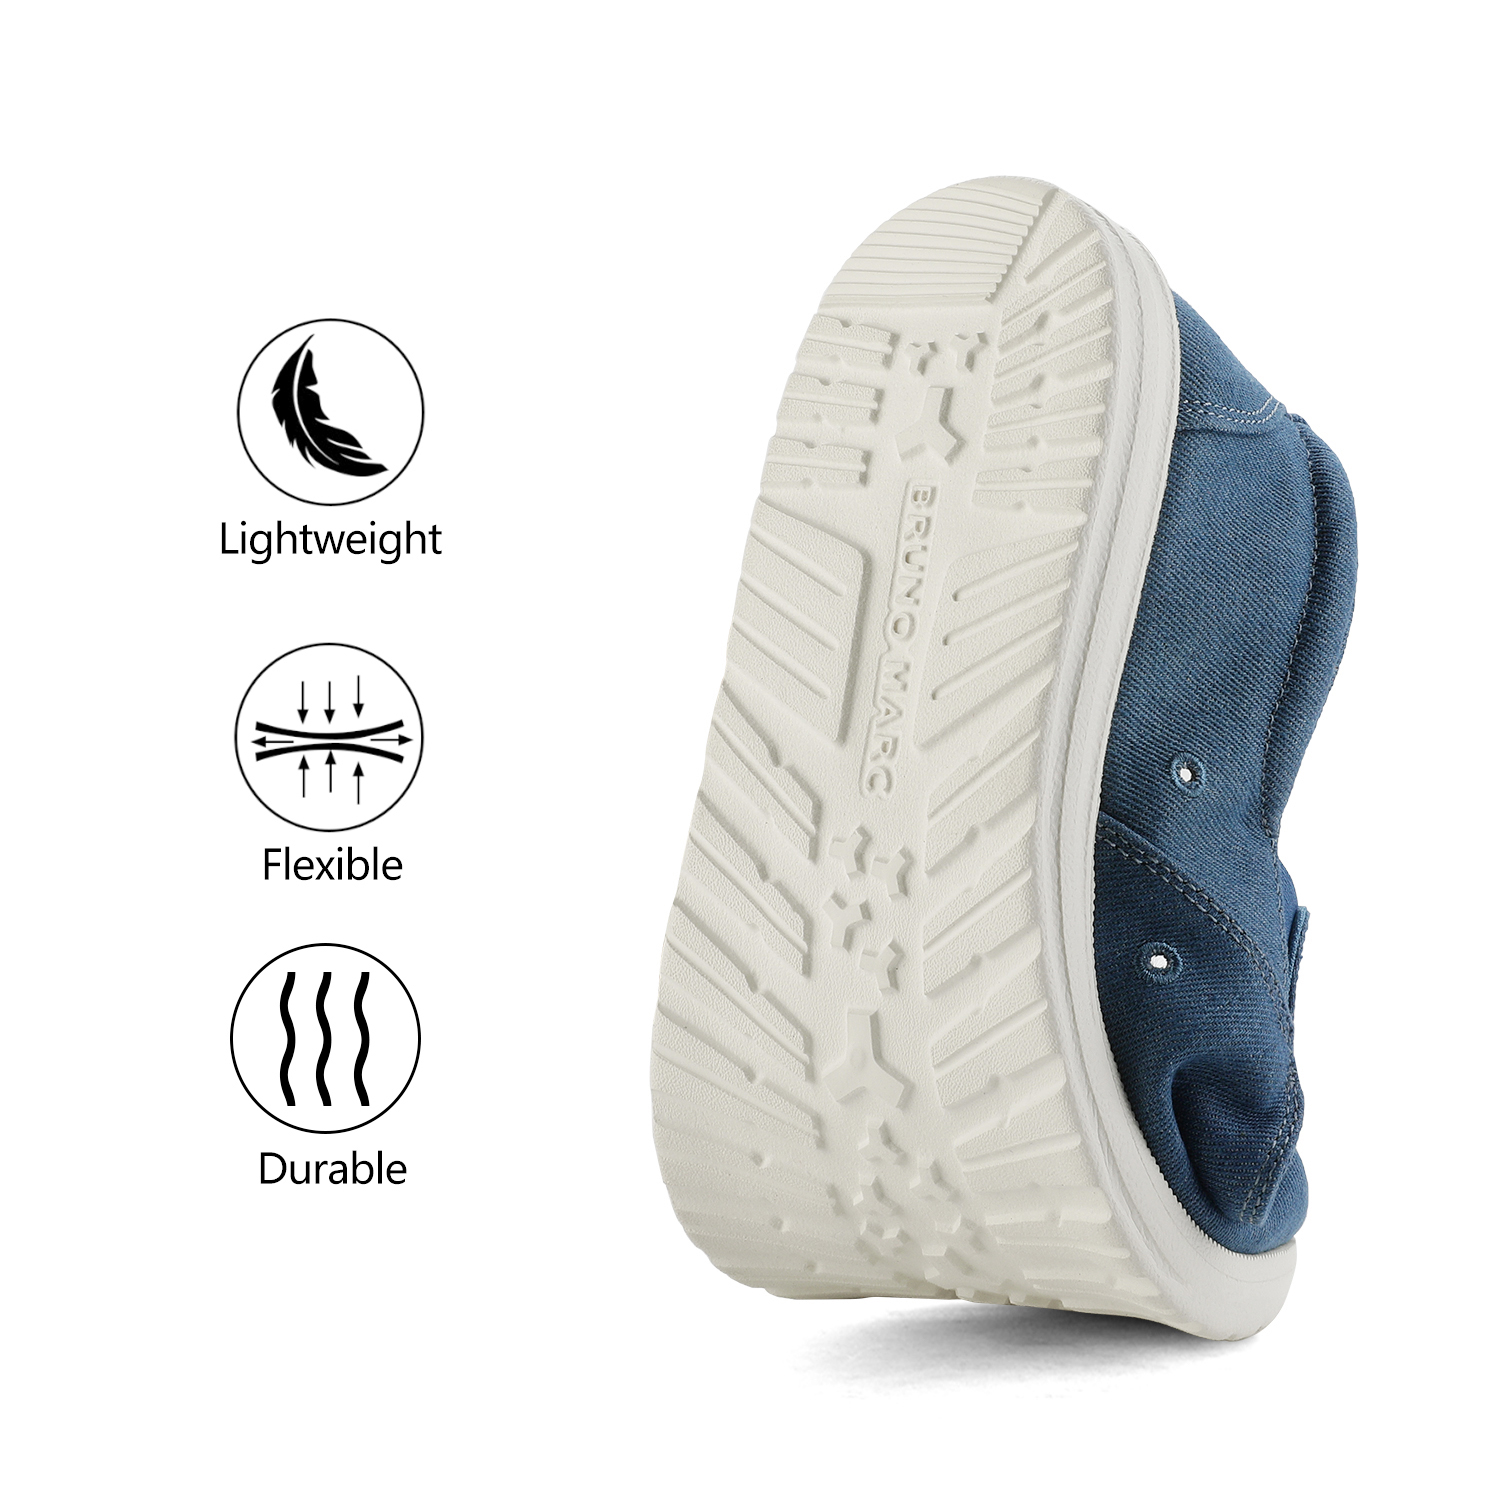 Bruno Marc Men's Slip On Loafer Walking Shoes SUNVENT-01 BLUE/DENIM size 12 - image 3 of 6